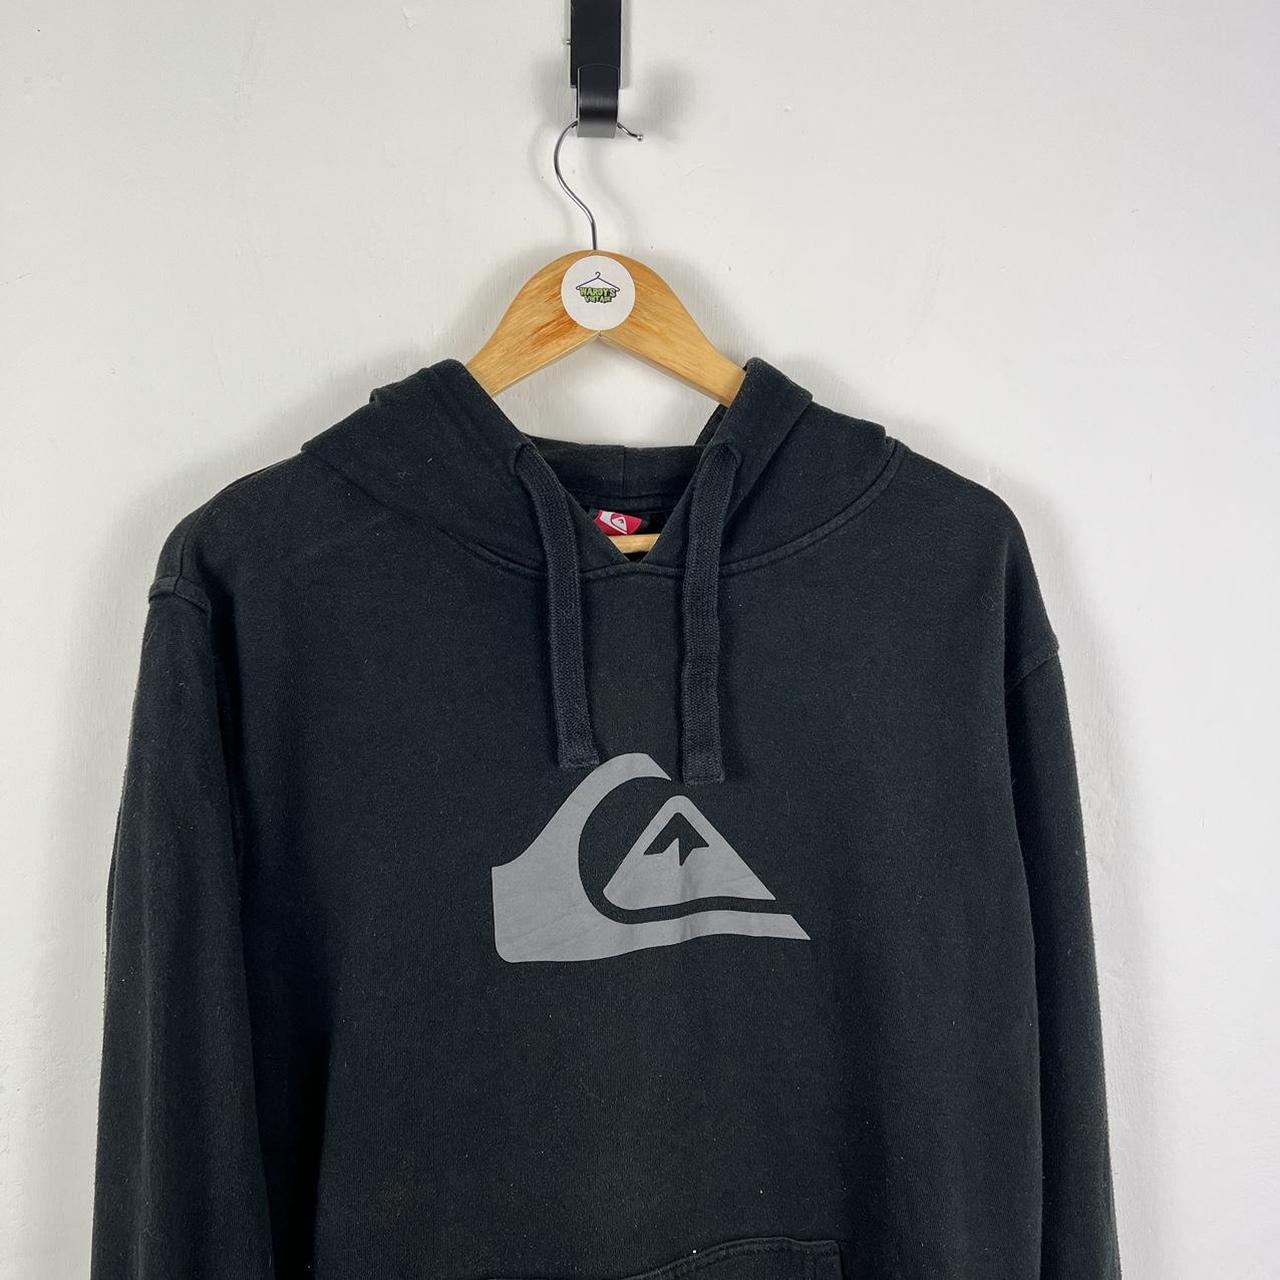 Quiksilver hoodie large